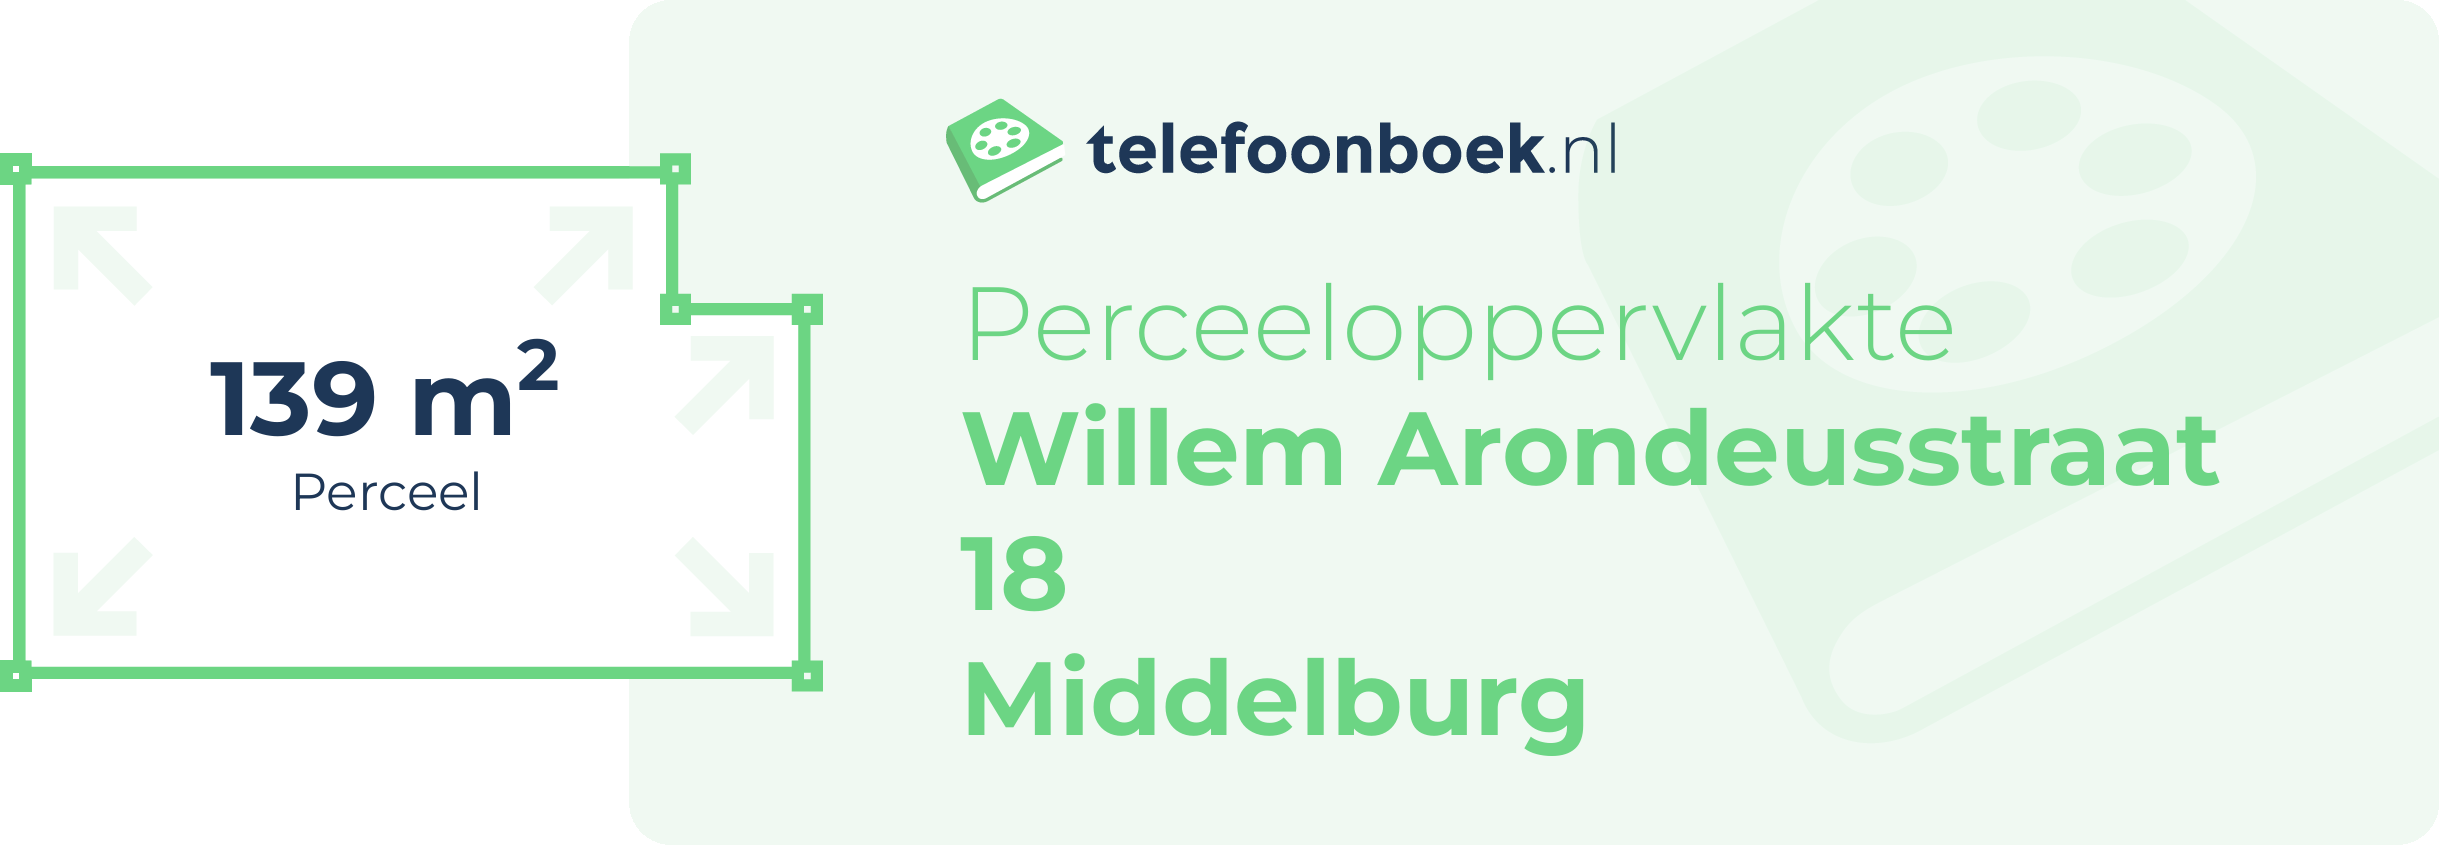 Perceeloppervlakte Willem Arondeusstraat 18 Middelburg